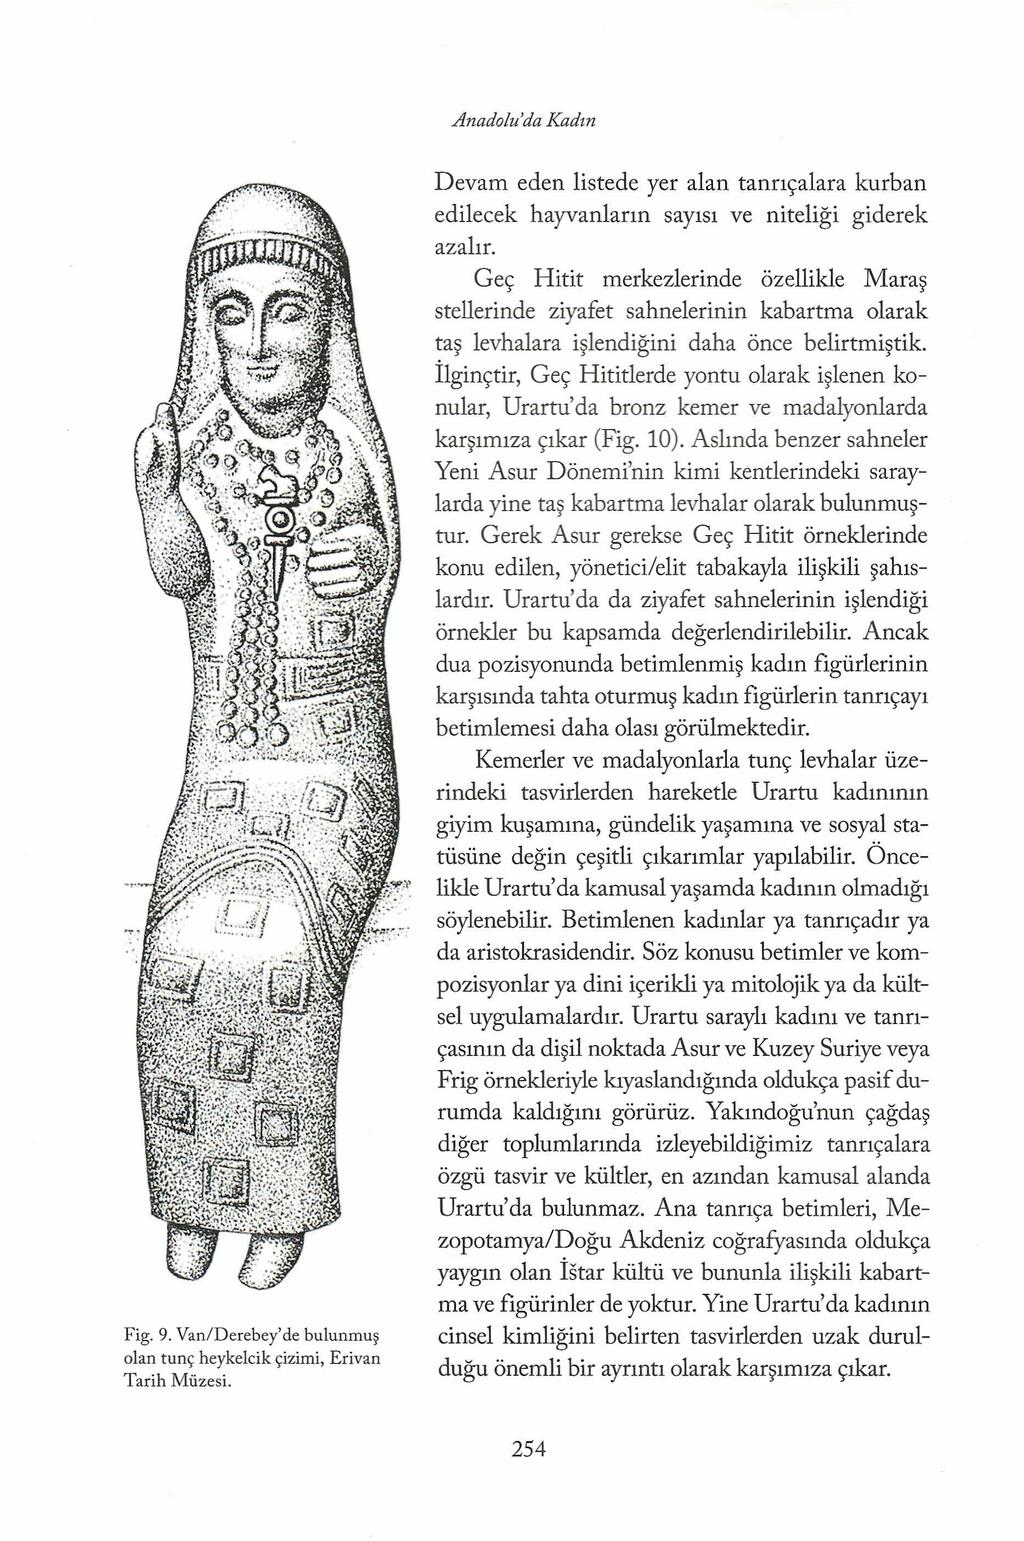 Anadolu'da Kadın Fig. 9. Van/Derebey'de bulunmuş olan tunç heykelcik çizimi, Erivan Tarih Müzesi. Devam eden listede yer alan tanrıçalara kurban edilecek hayvanların sayısı ve niteliği giderek azalır.